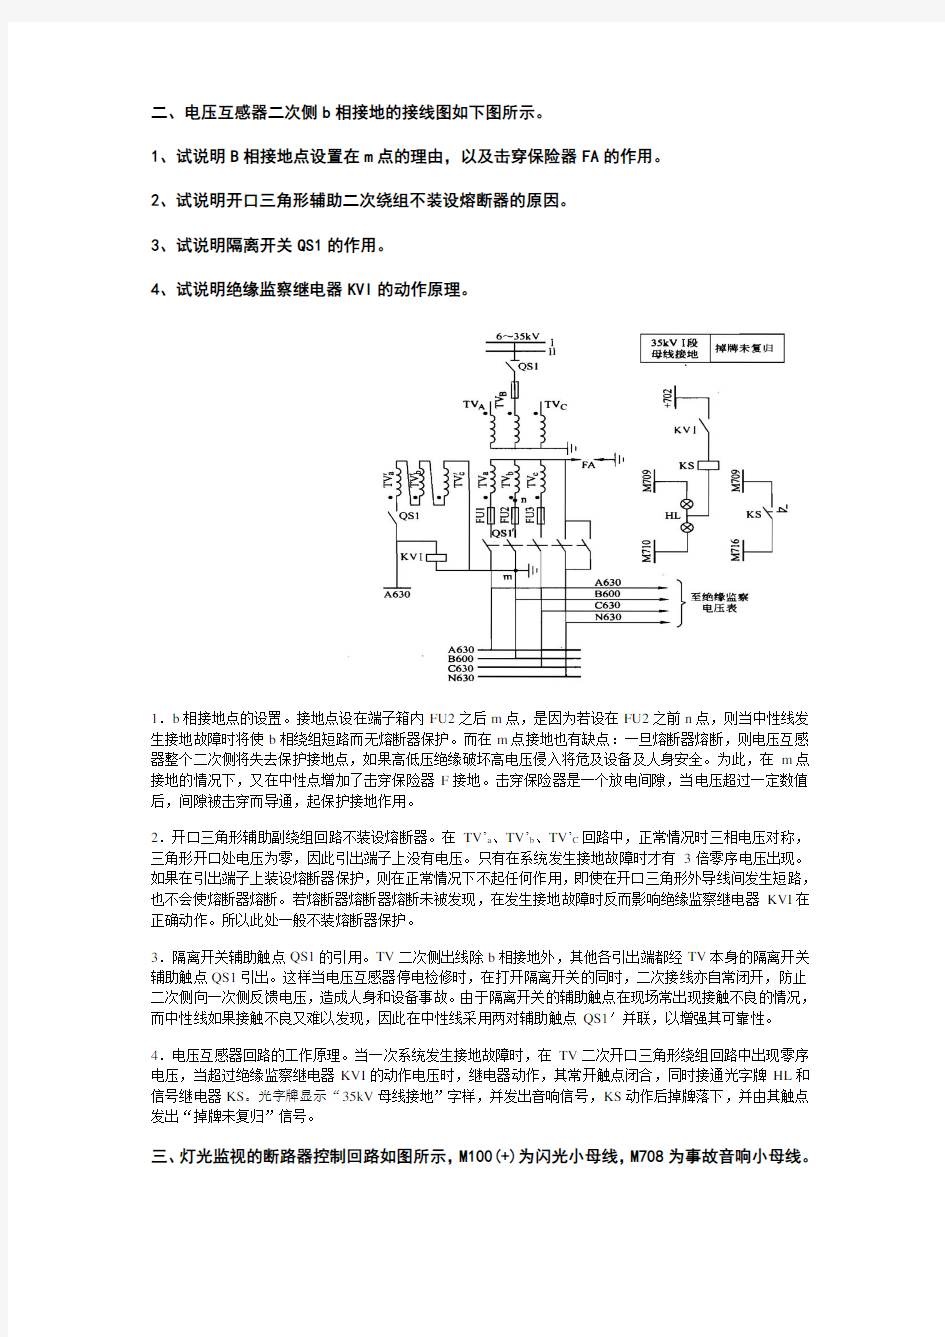 山东大学发电厂变电所控制课程试卷(A4版)